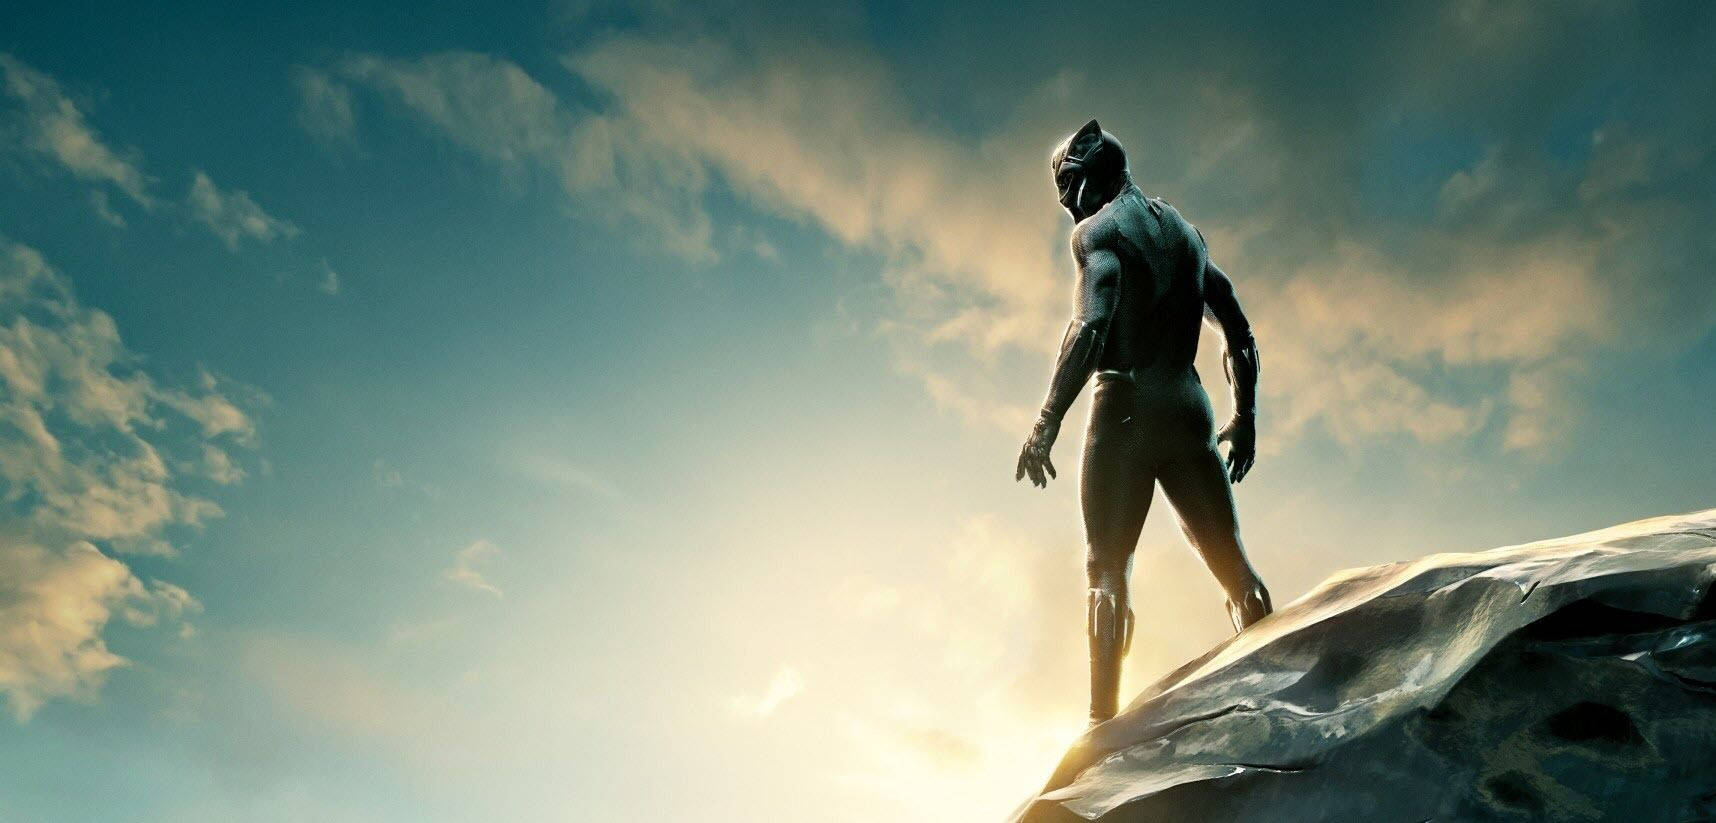 Black Panther Superhero Movie